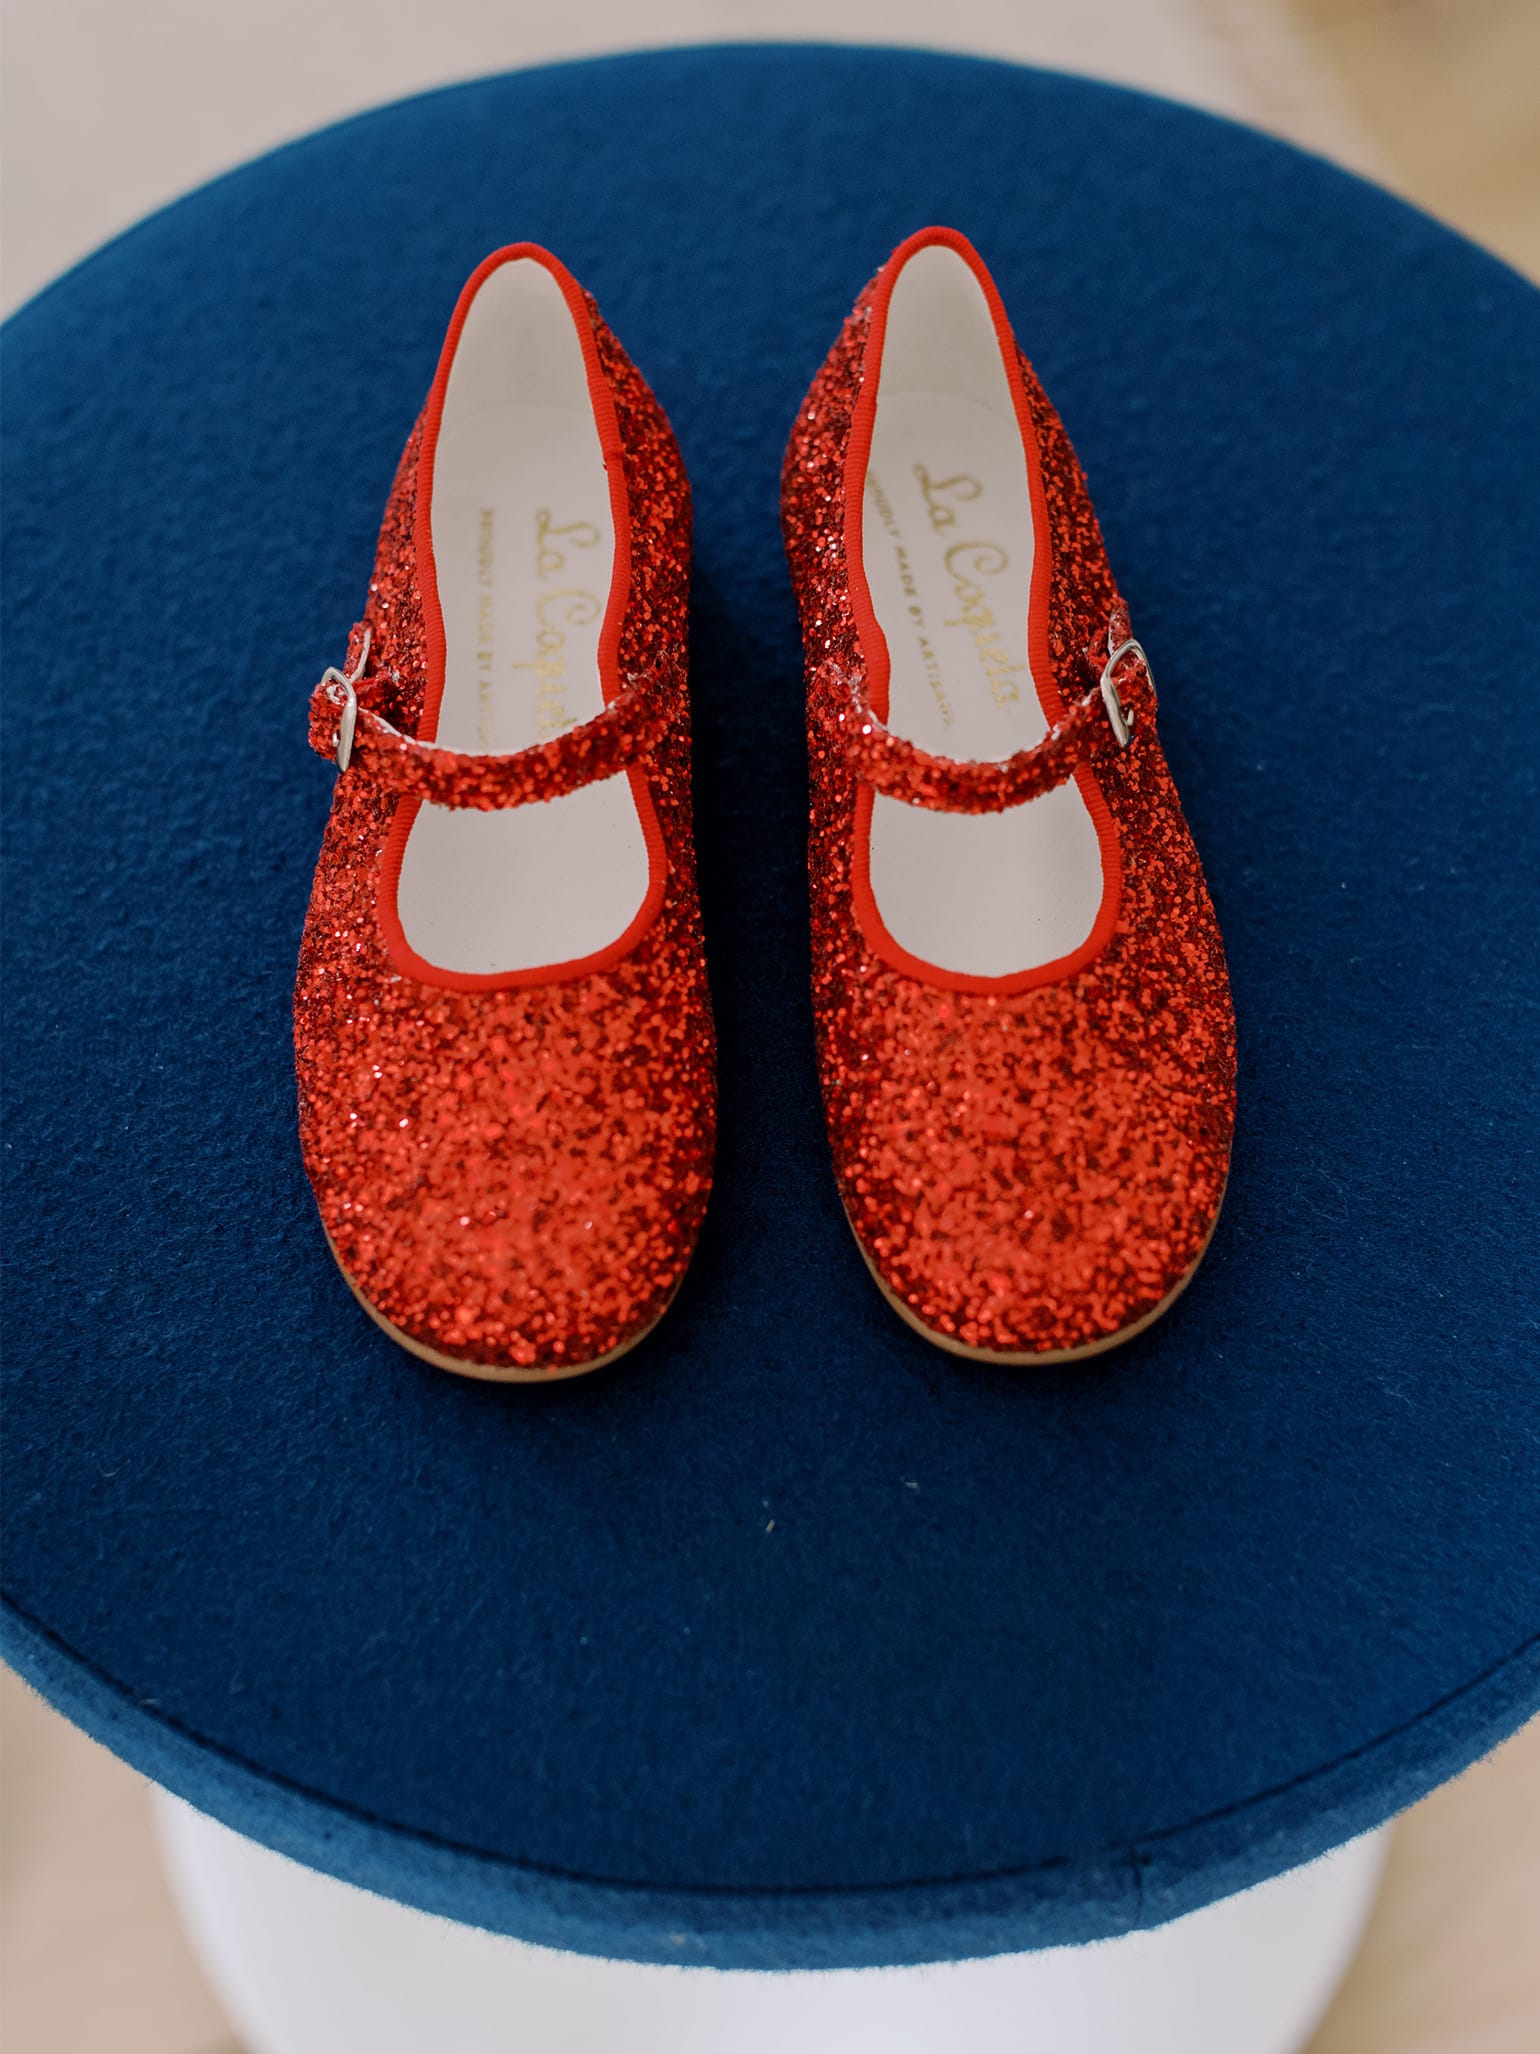 Stelle Now Glitter Mary Jane Shoes for Girls/Toddler, Toddler Girl's, Size: 12 Medium Little Kid, Red